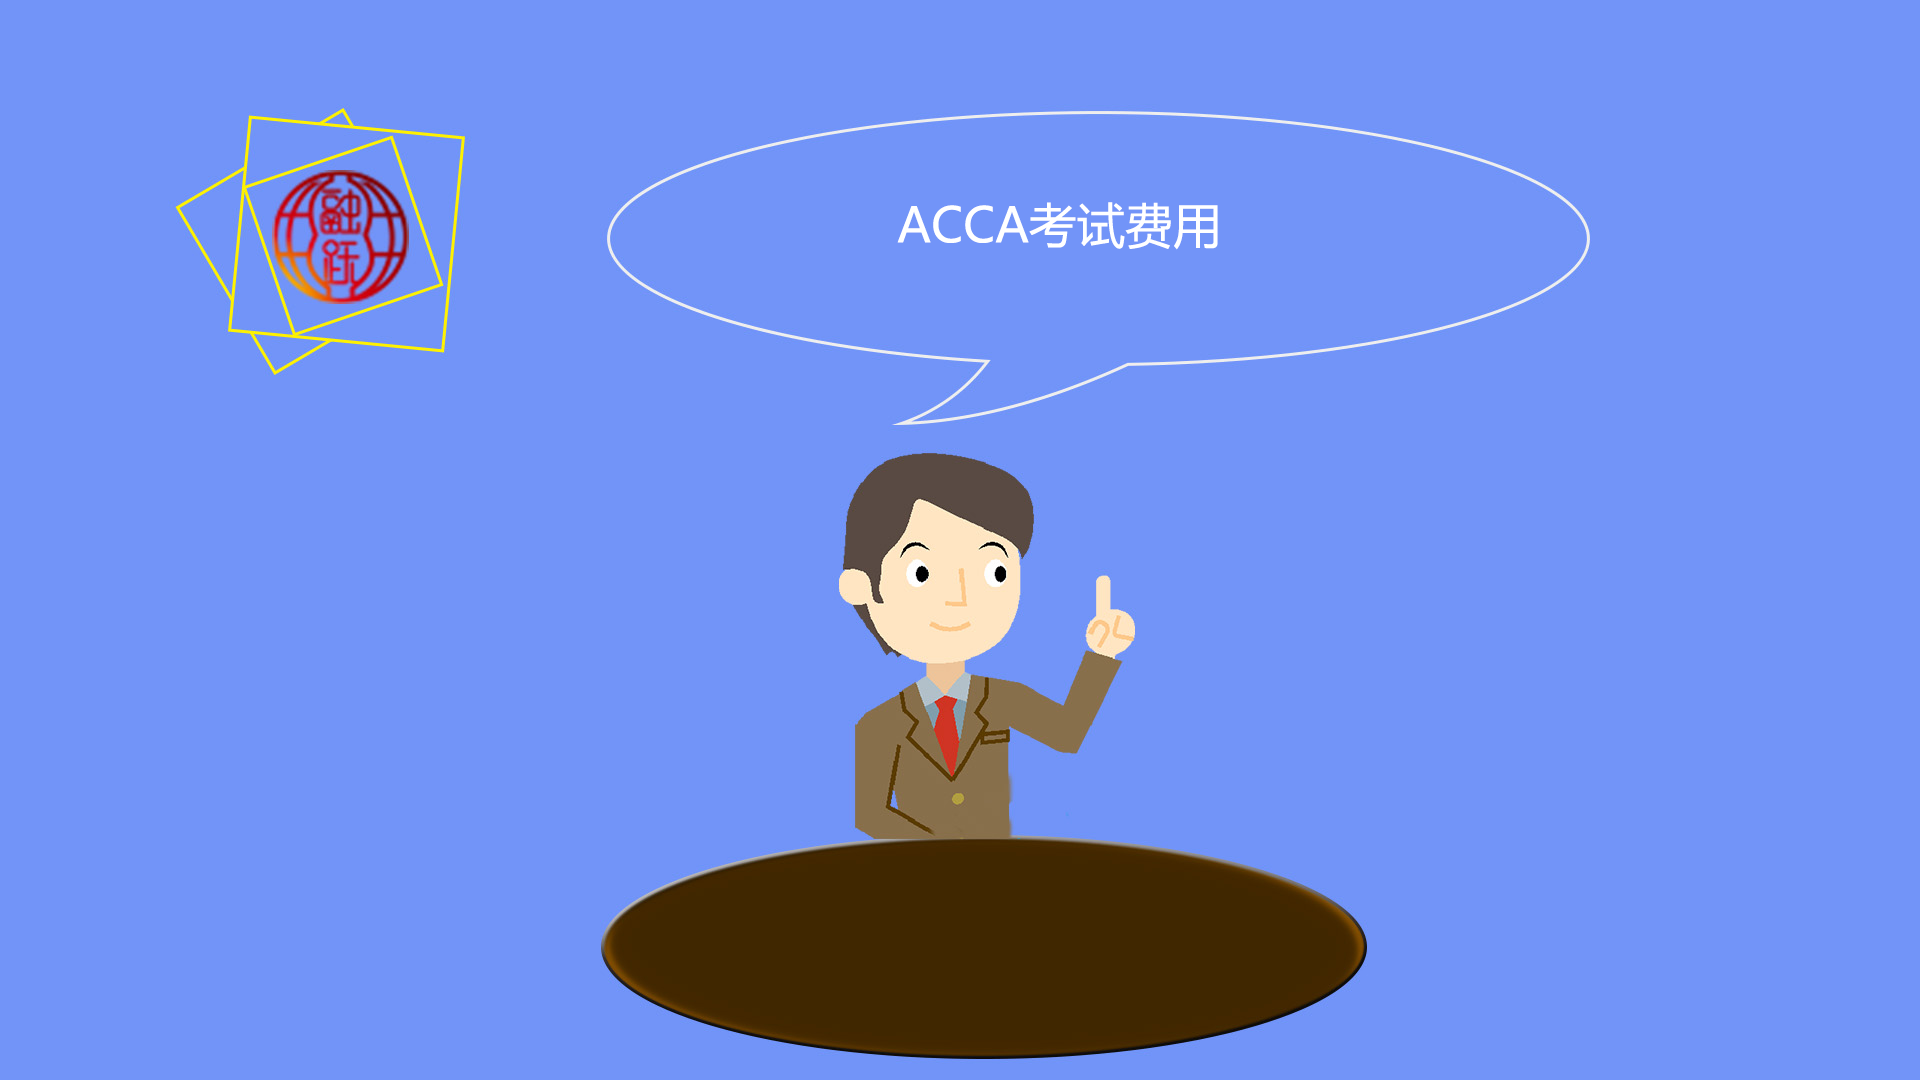 2020年ACCA考试费用总共多少钱呢？2020年行政复议申请提交截止日期是三月份吗？